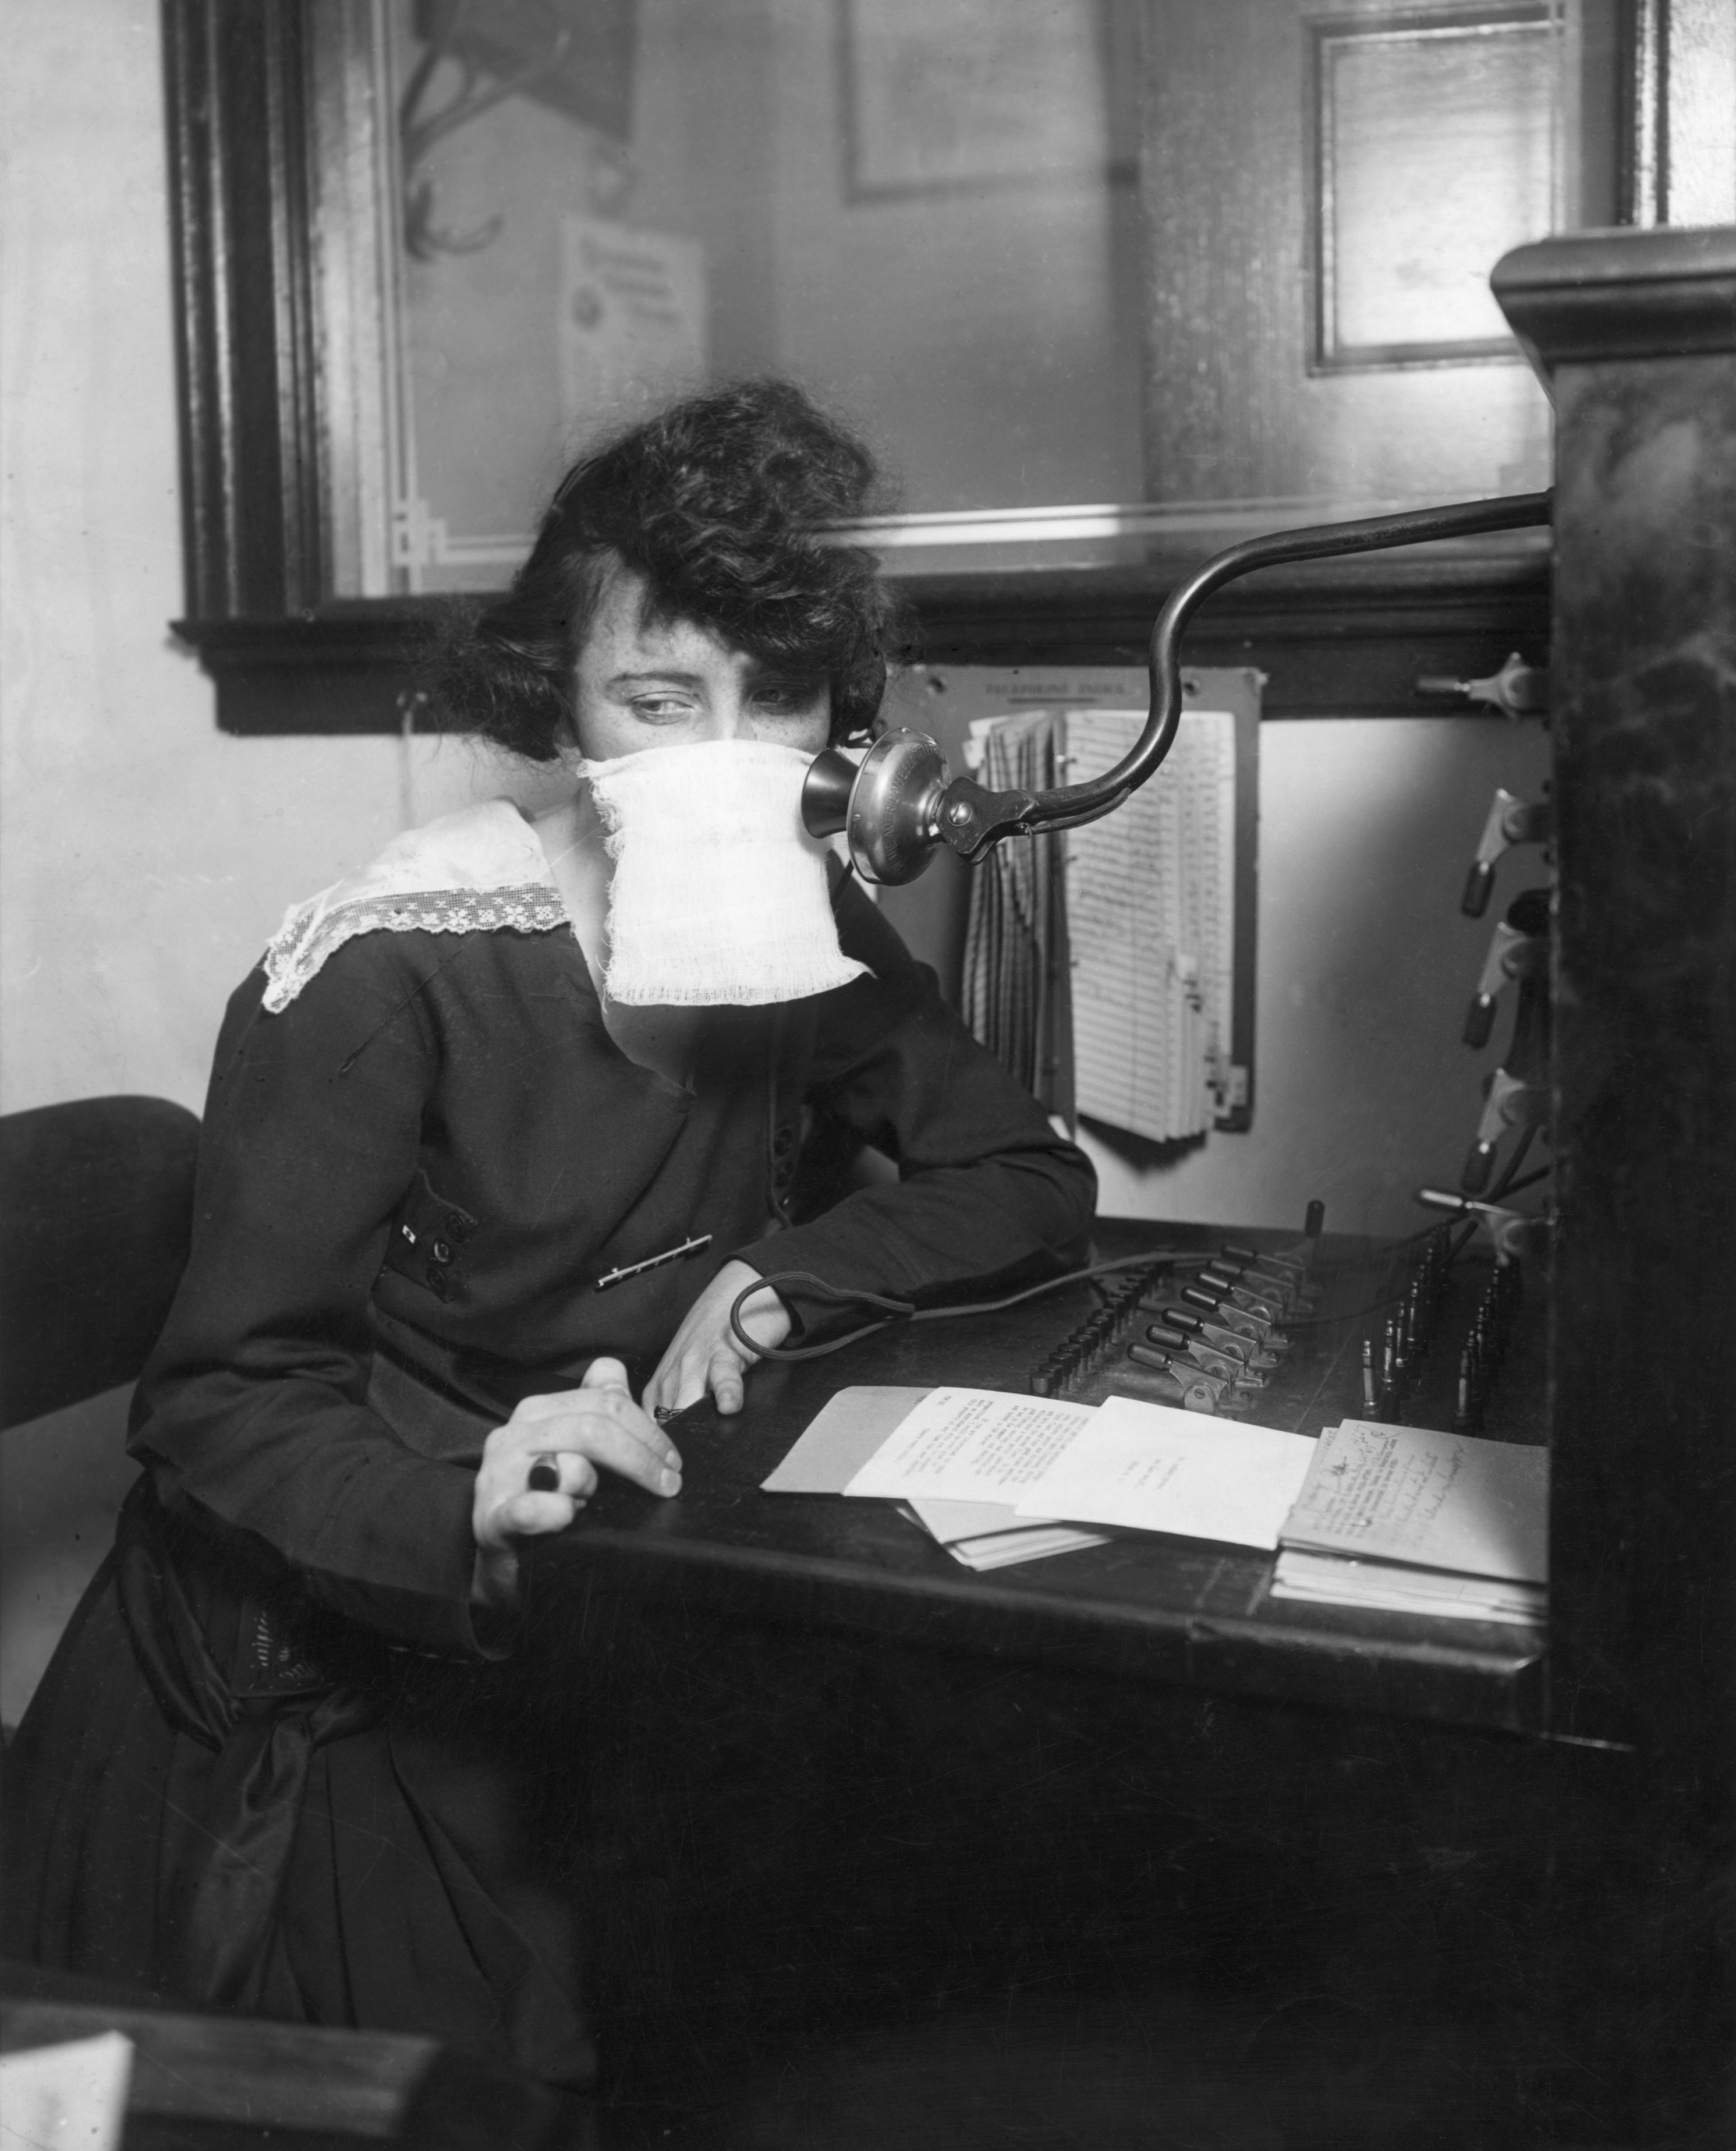 Durante a Gripe Espanhola, em 1918, foram adotadas medidas sanitárias semelhantes às de hoje, como o uso de máscara e a realização de atividades ao ar livre